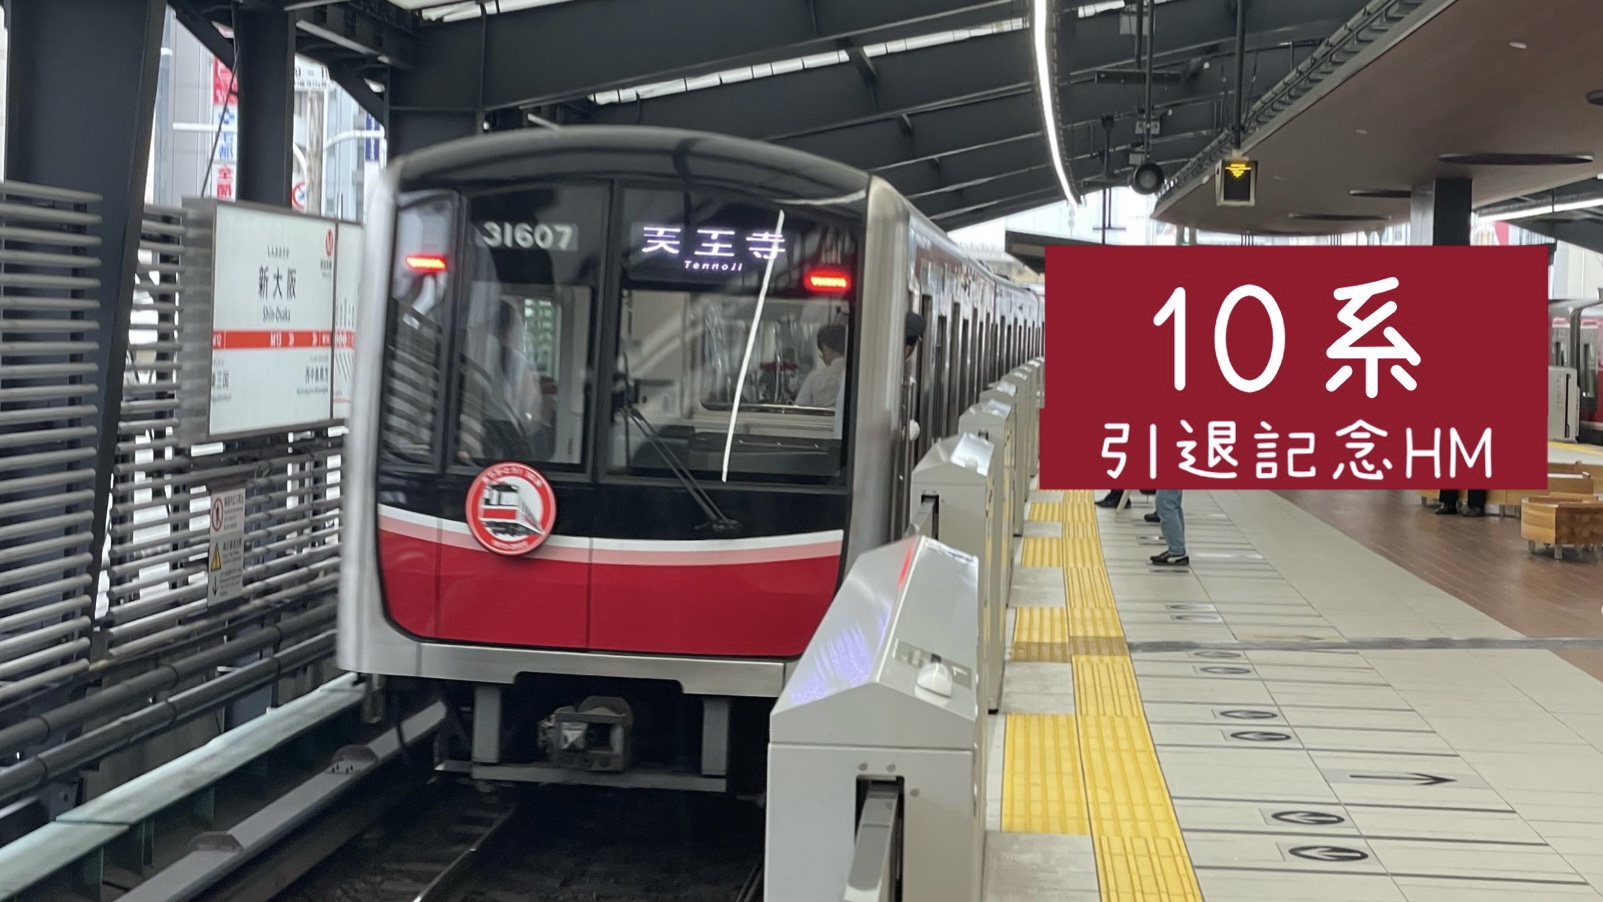 10系引退記念ヘッドマーク付き列車を運行 記念グッズも販売 大阪メトロ御堂筋線 Osaka Metropolis